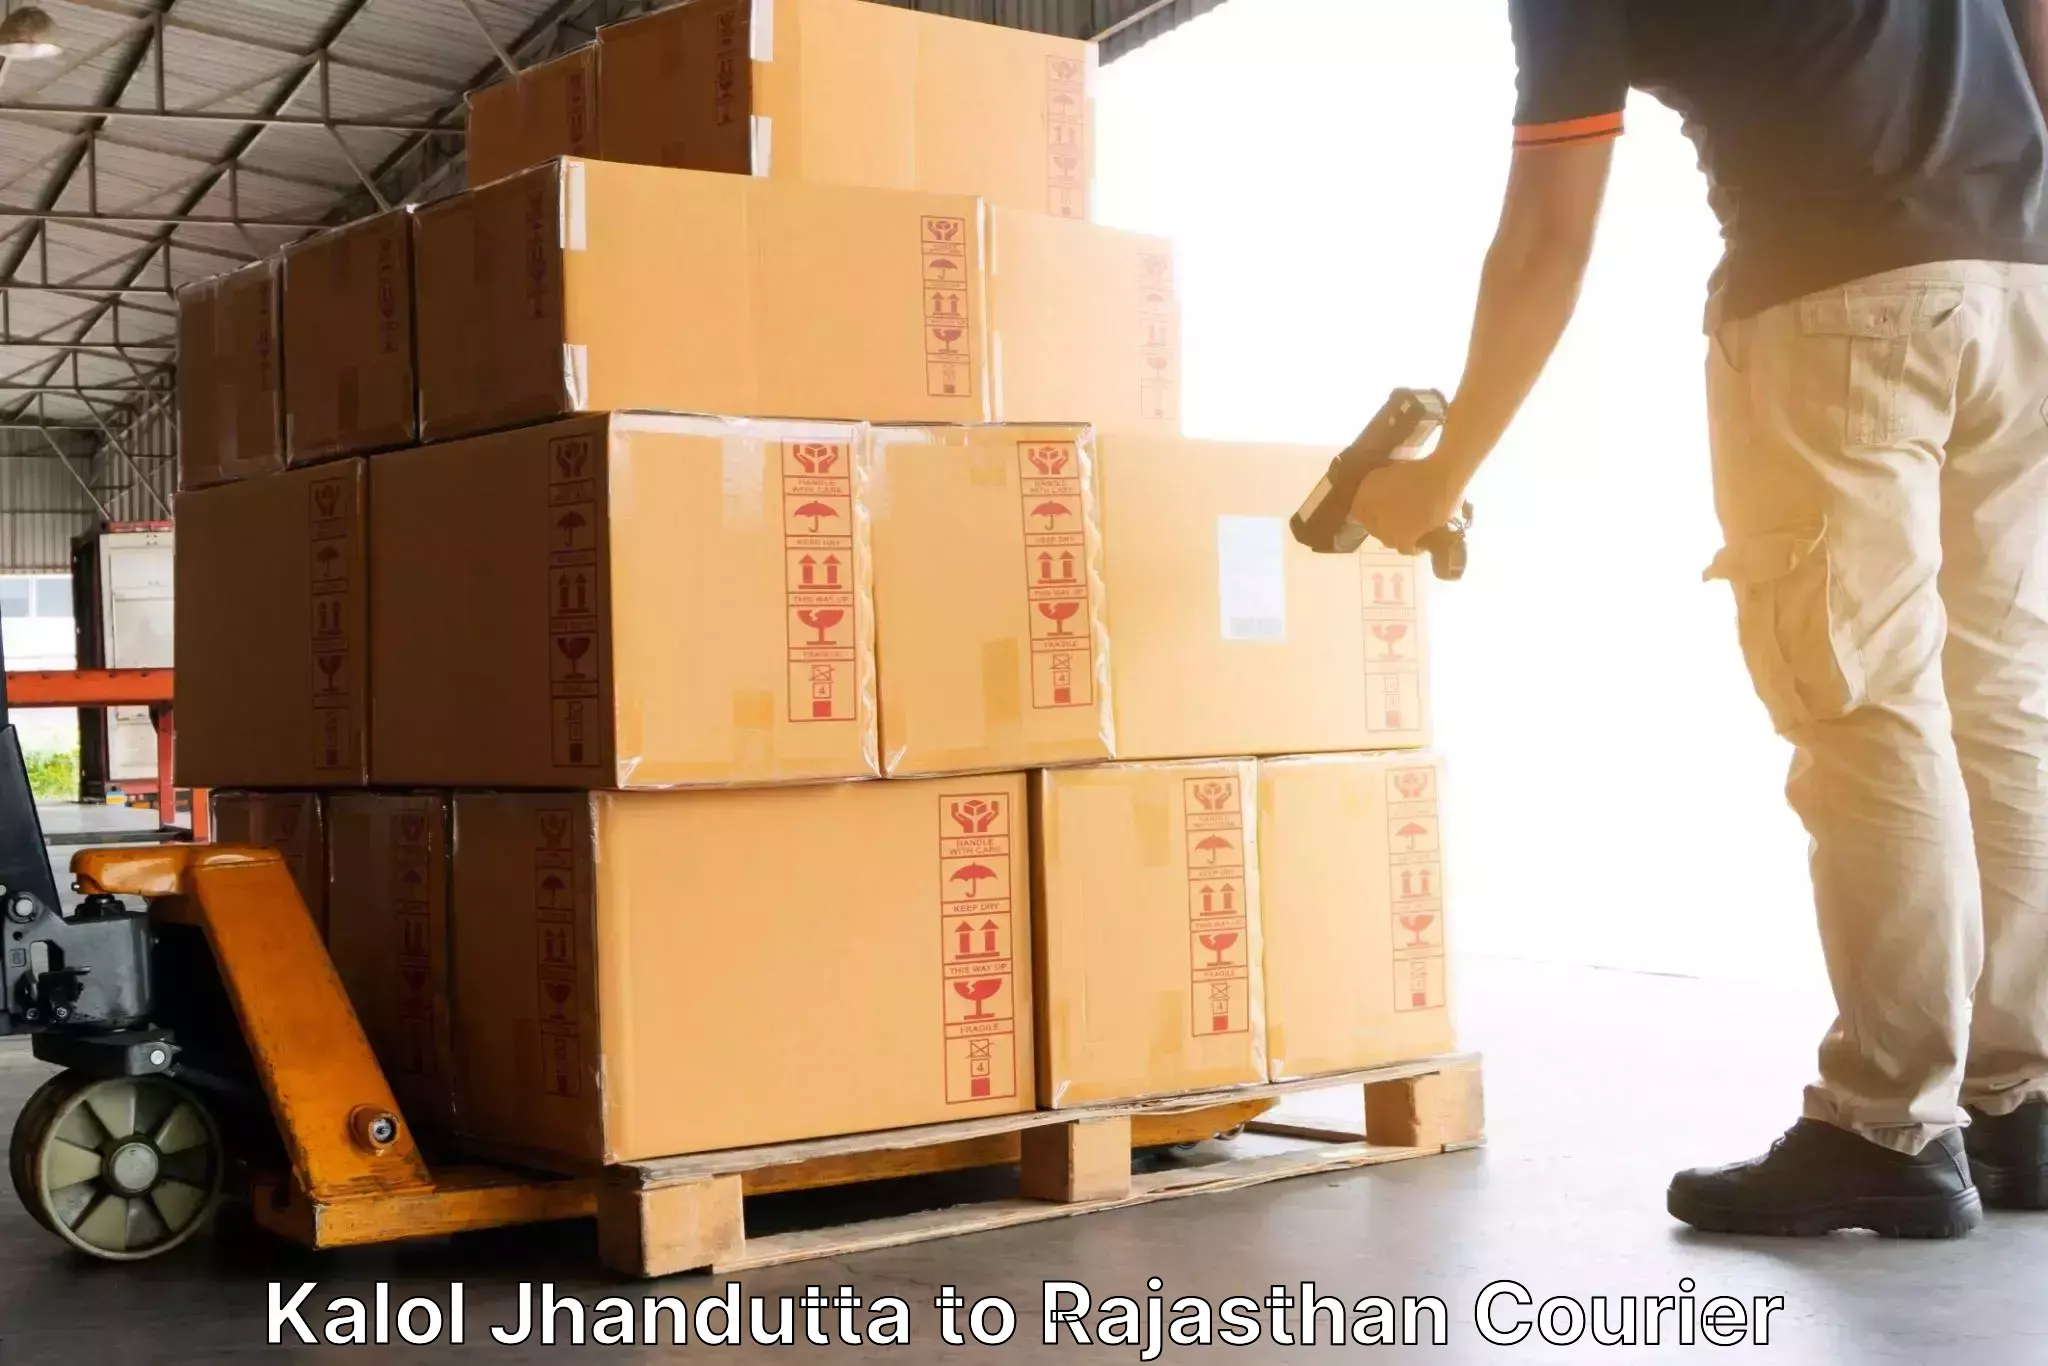 Customer-centric shipping Kalol Jhandutta to Kota